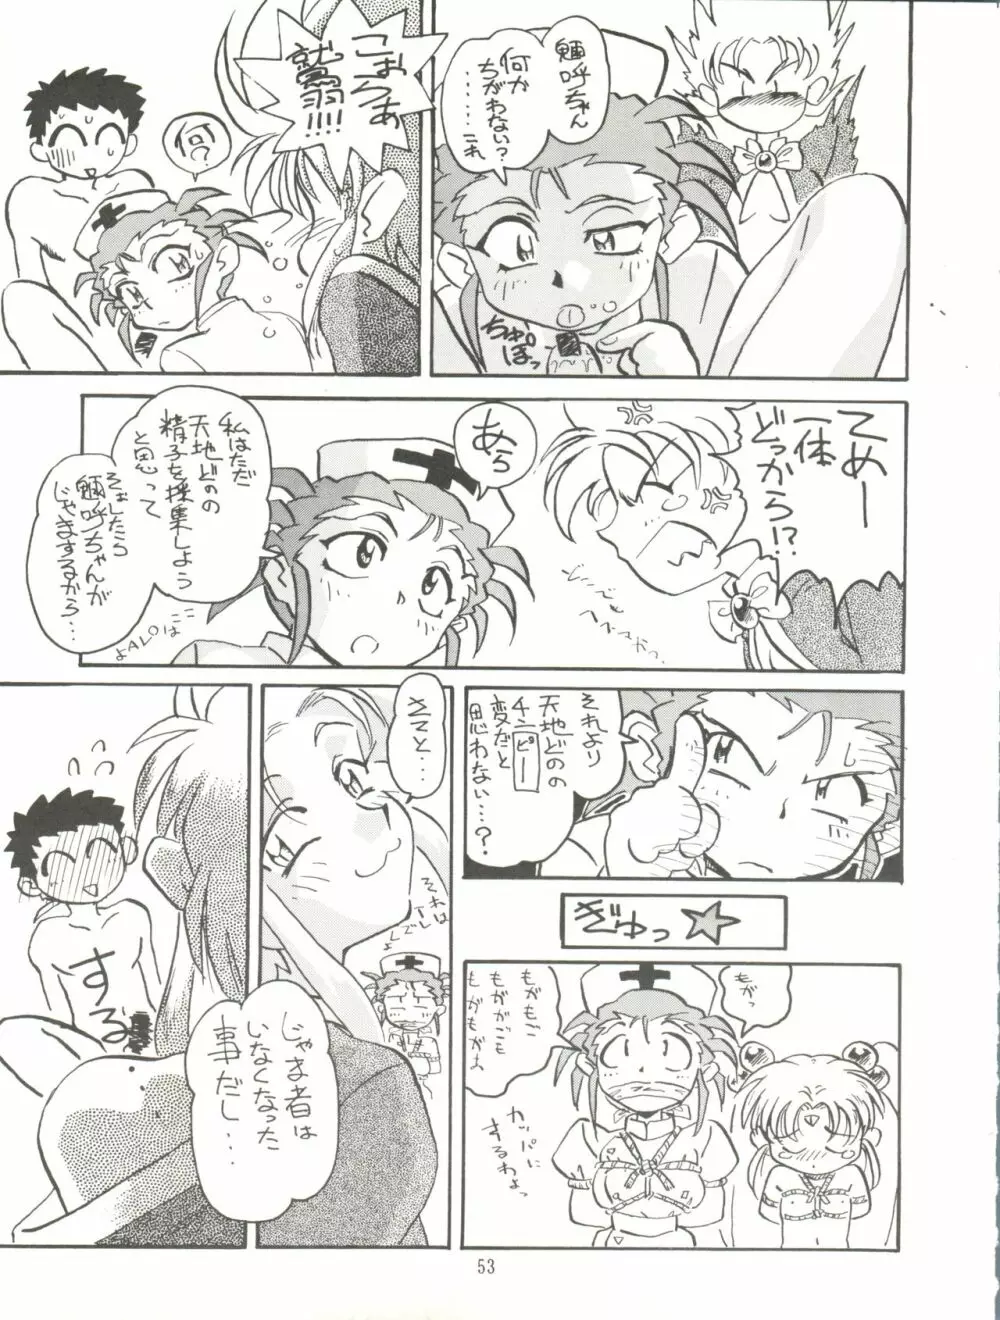 天地無用! みゃーん 3 Final Page.53